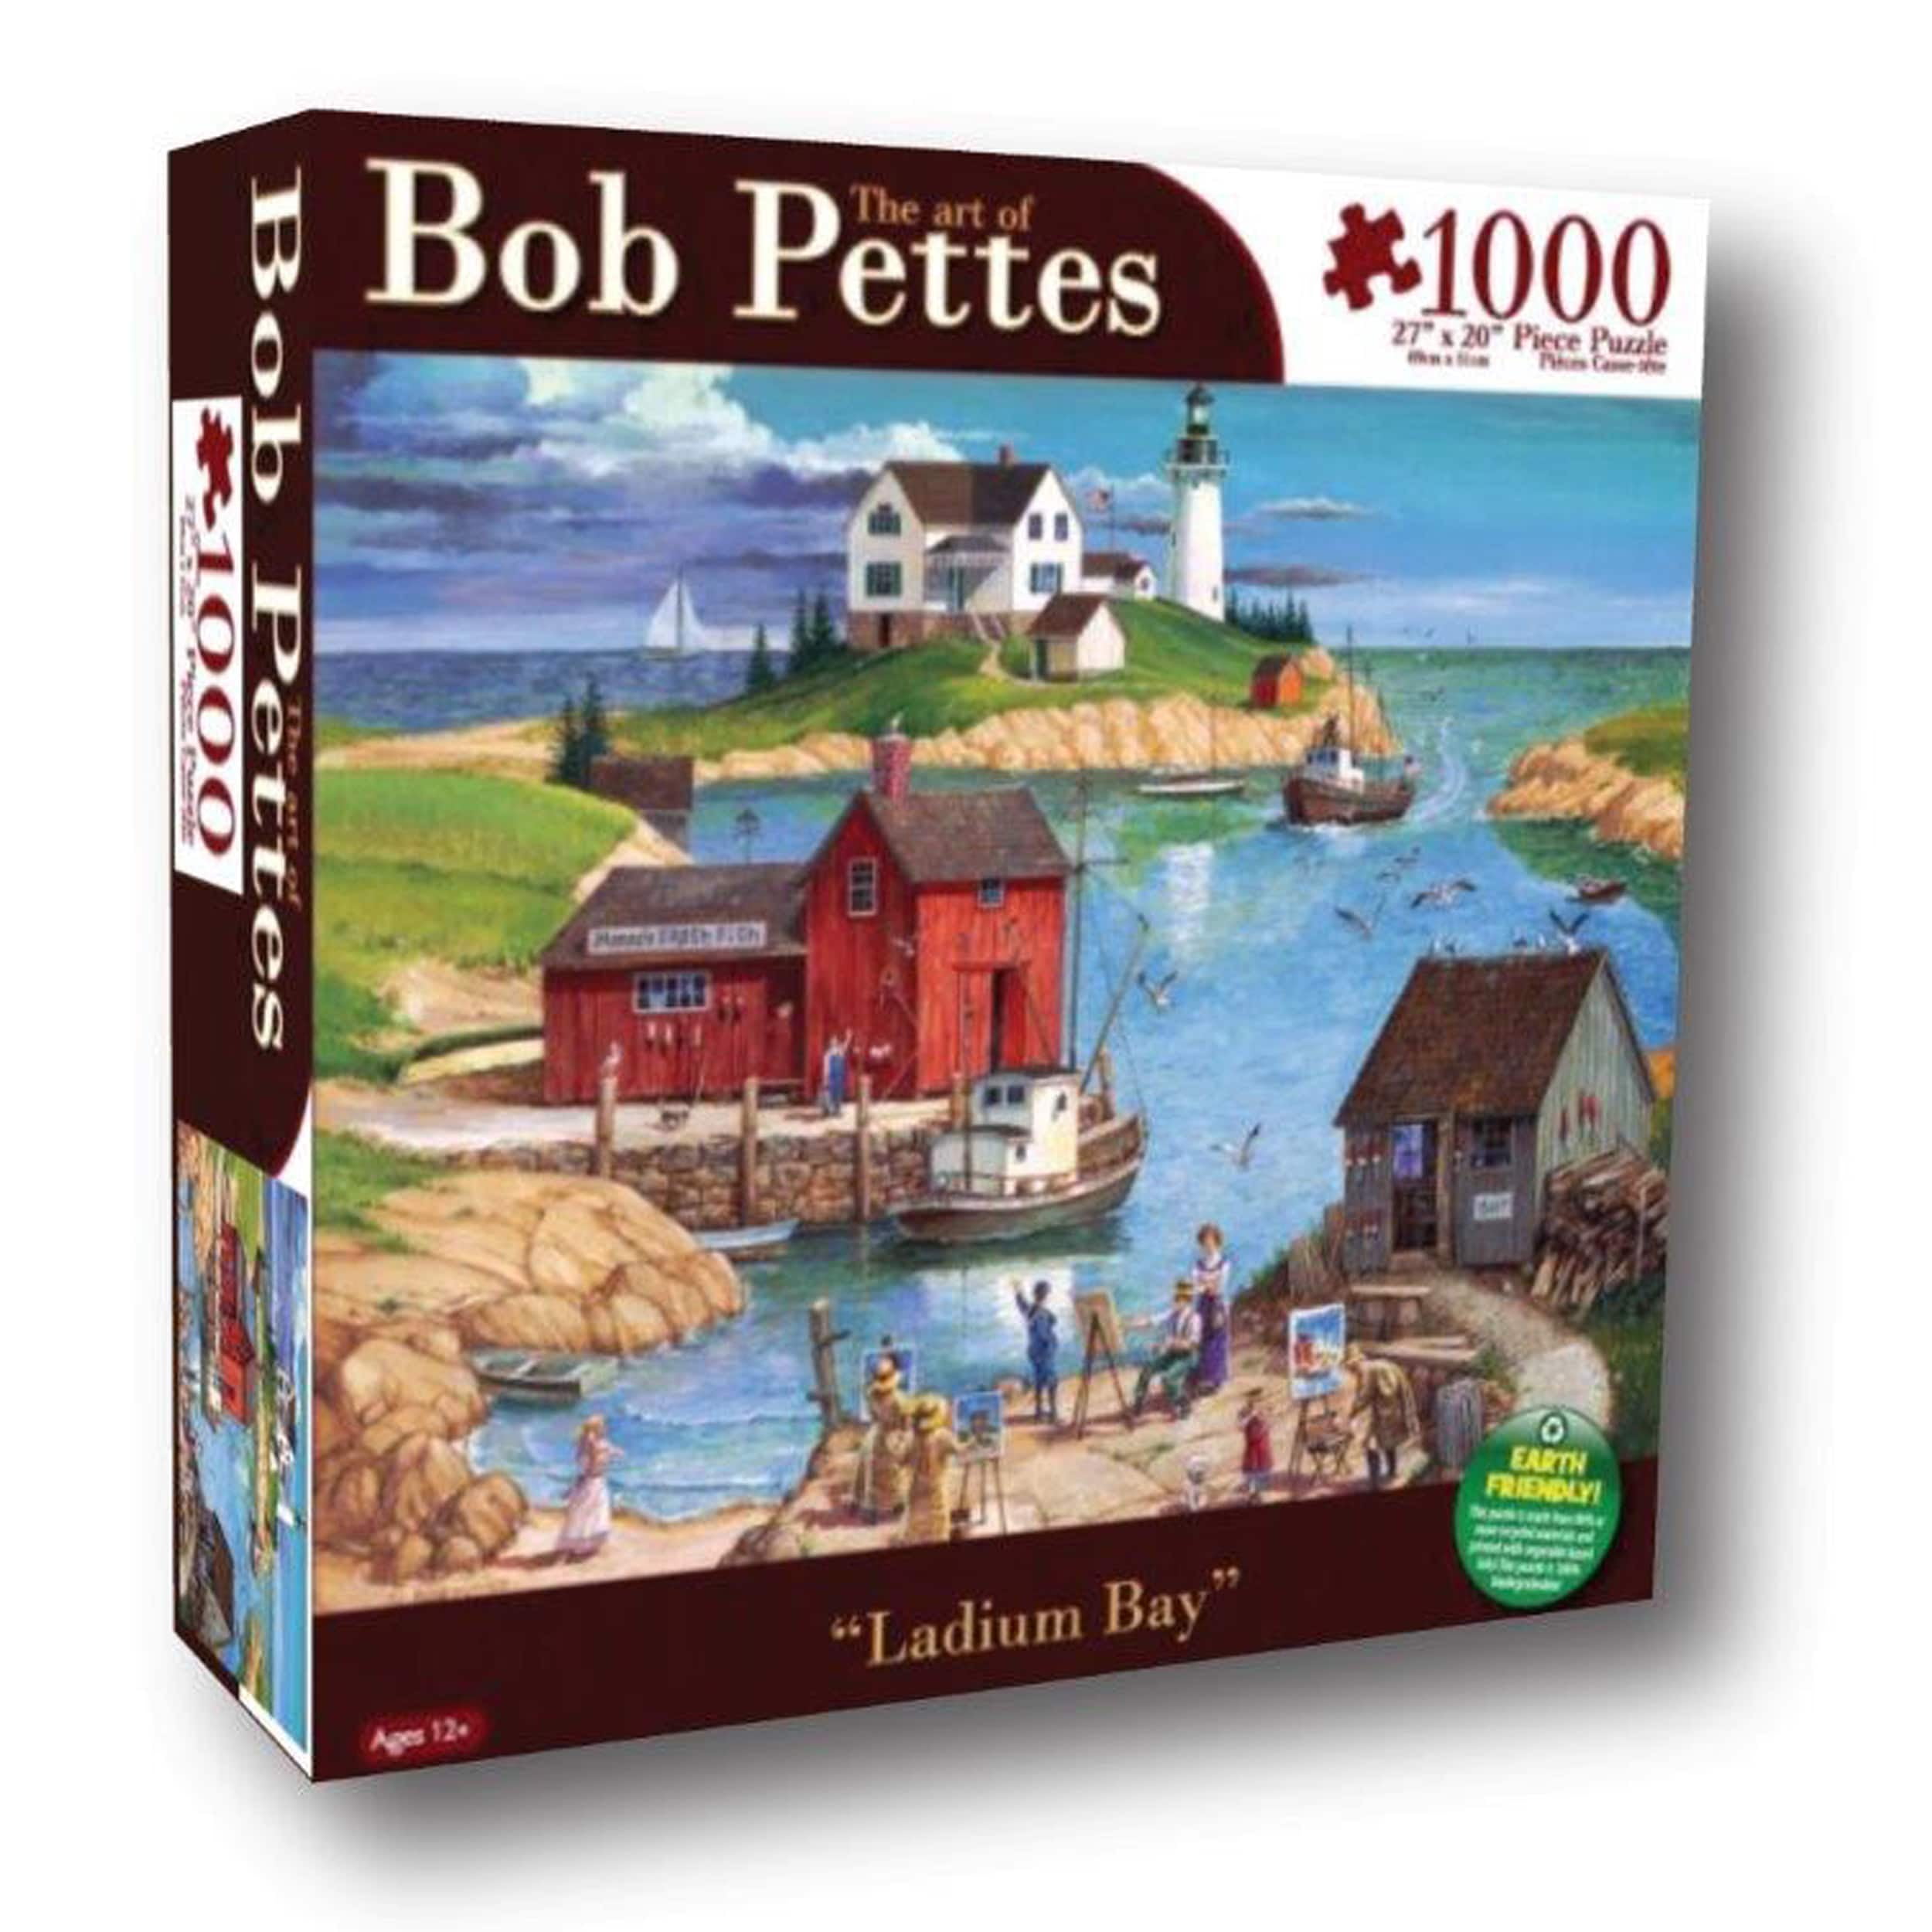 Karmin 1000 PC Puzzle Bob Pettes Spring Wedding 27x20 for sale online 